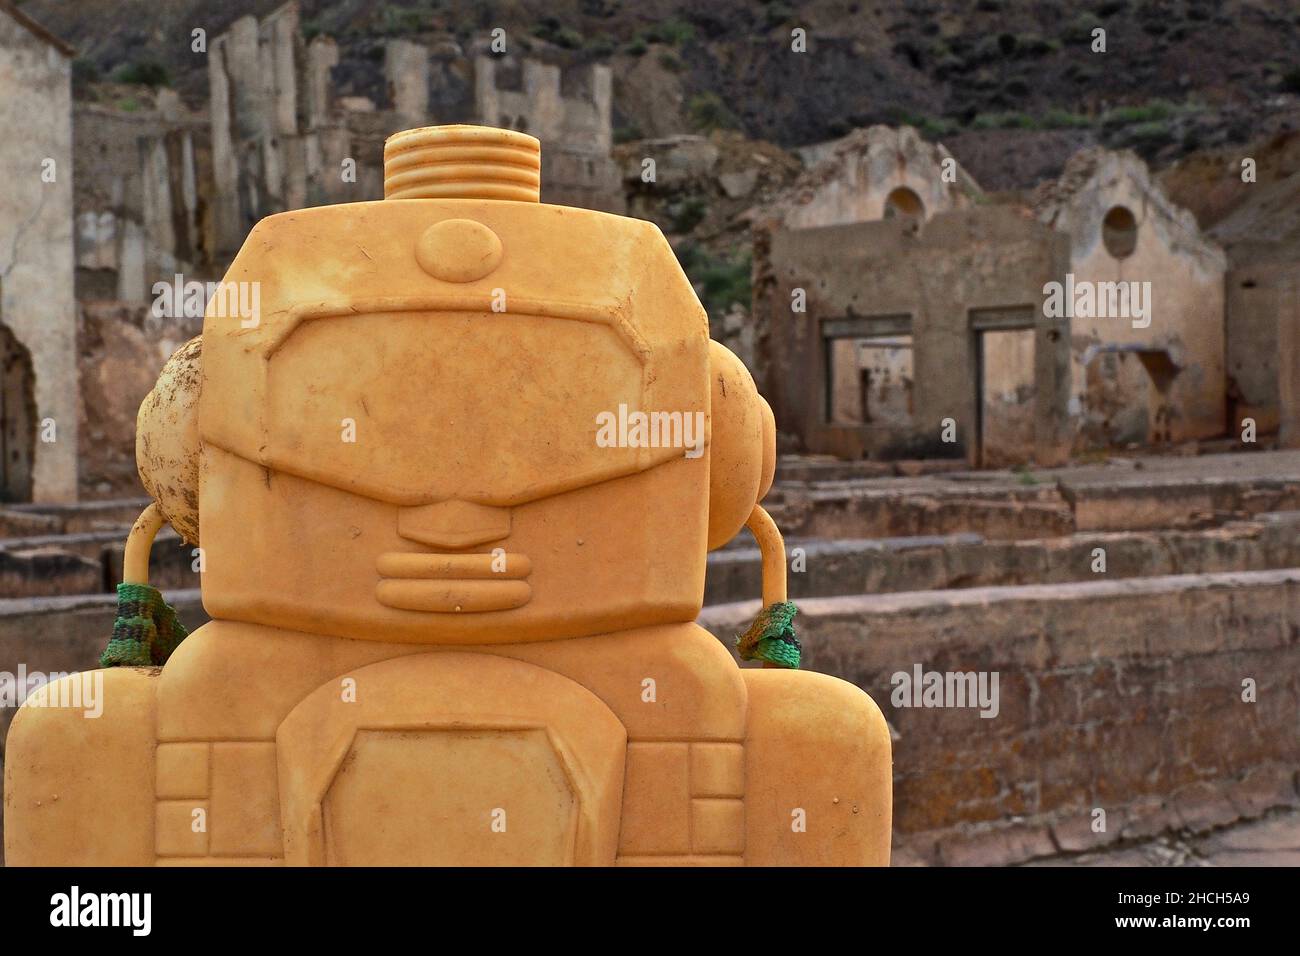 Testa di una figura plastica gialla di fronte alle rovine di una miniera a Mazarron, Murcia, Spagna Foto Stock